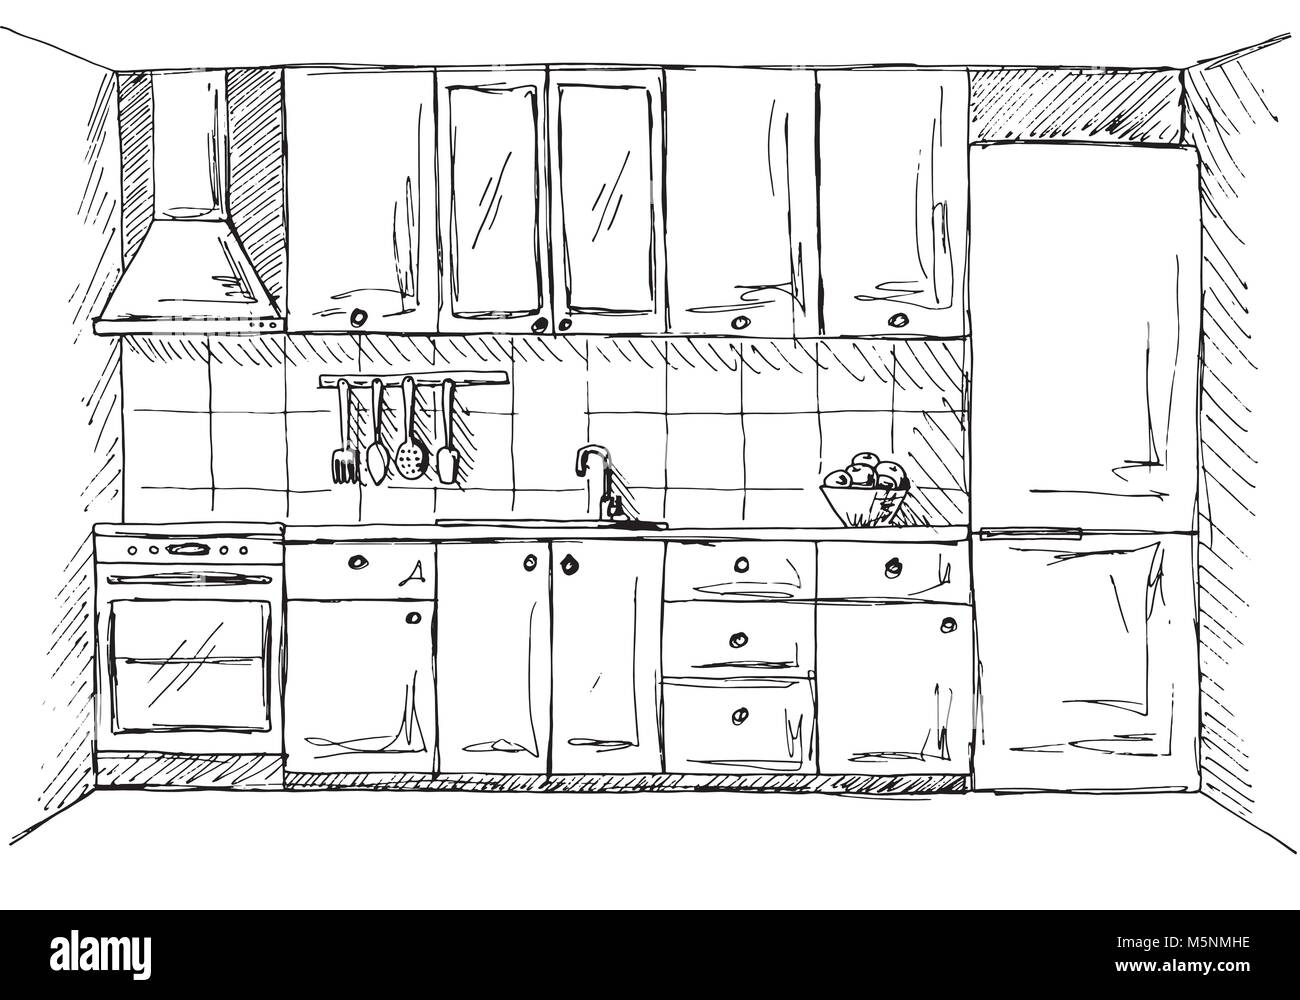 Disegnata Per Mobili Da Cucina Illustrazione Vettoriale In Stile Di Disegno Immagine E Vettoriale Alamy